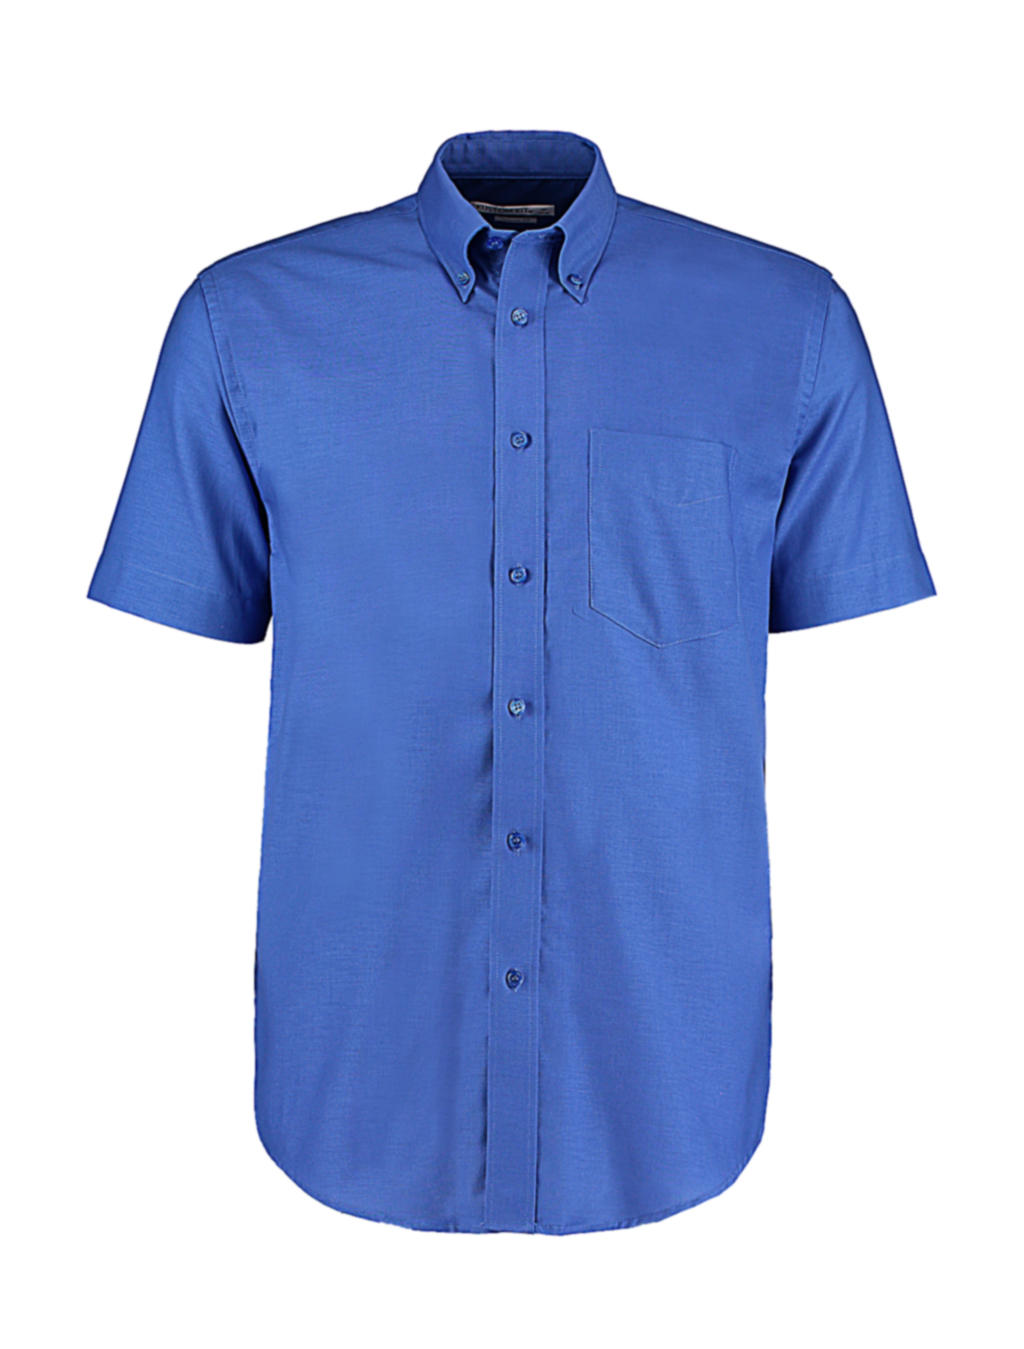  Classic Fit Workwear Oxford Shirt SSL in Farbe Italian Blue